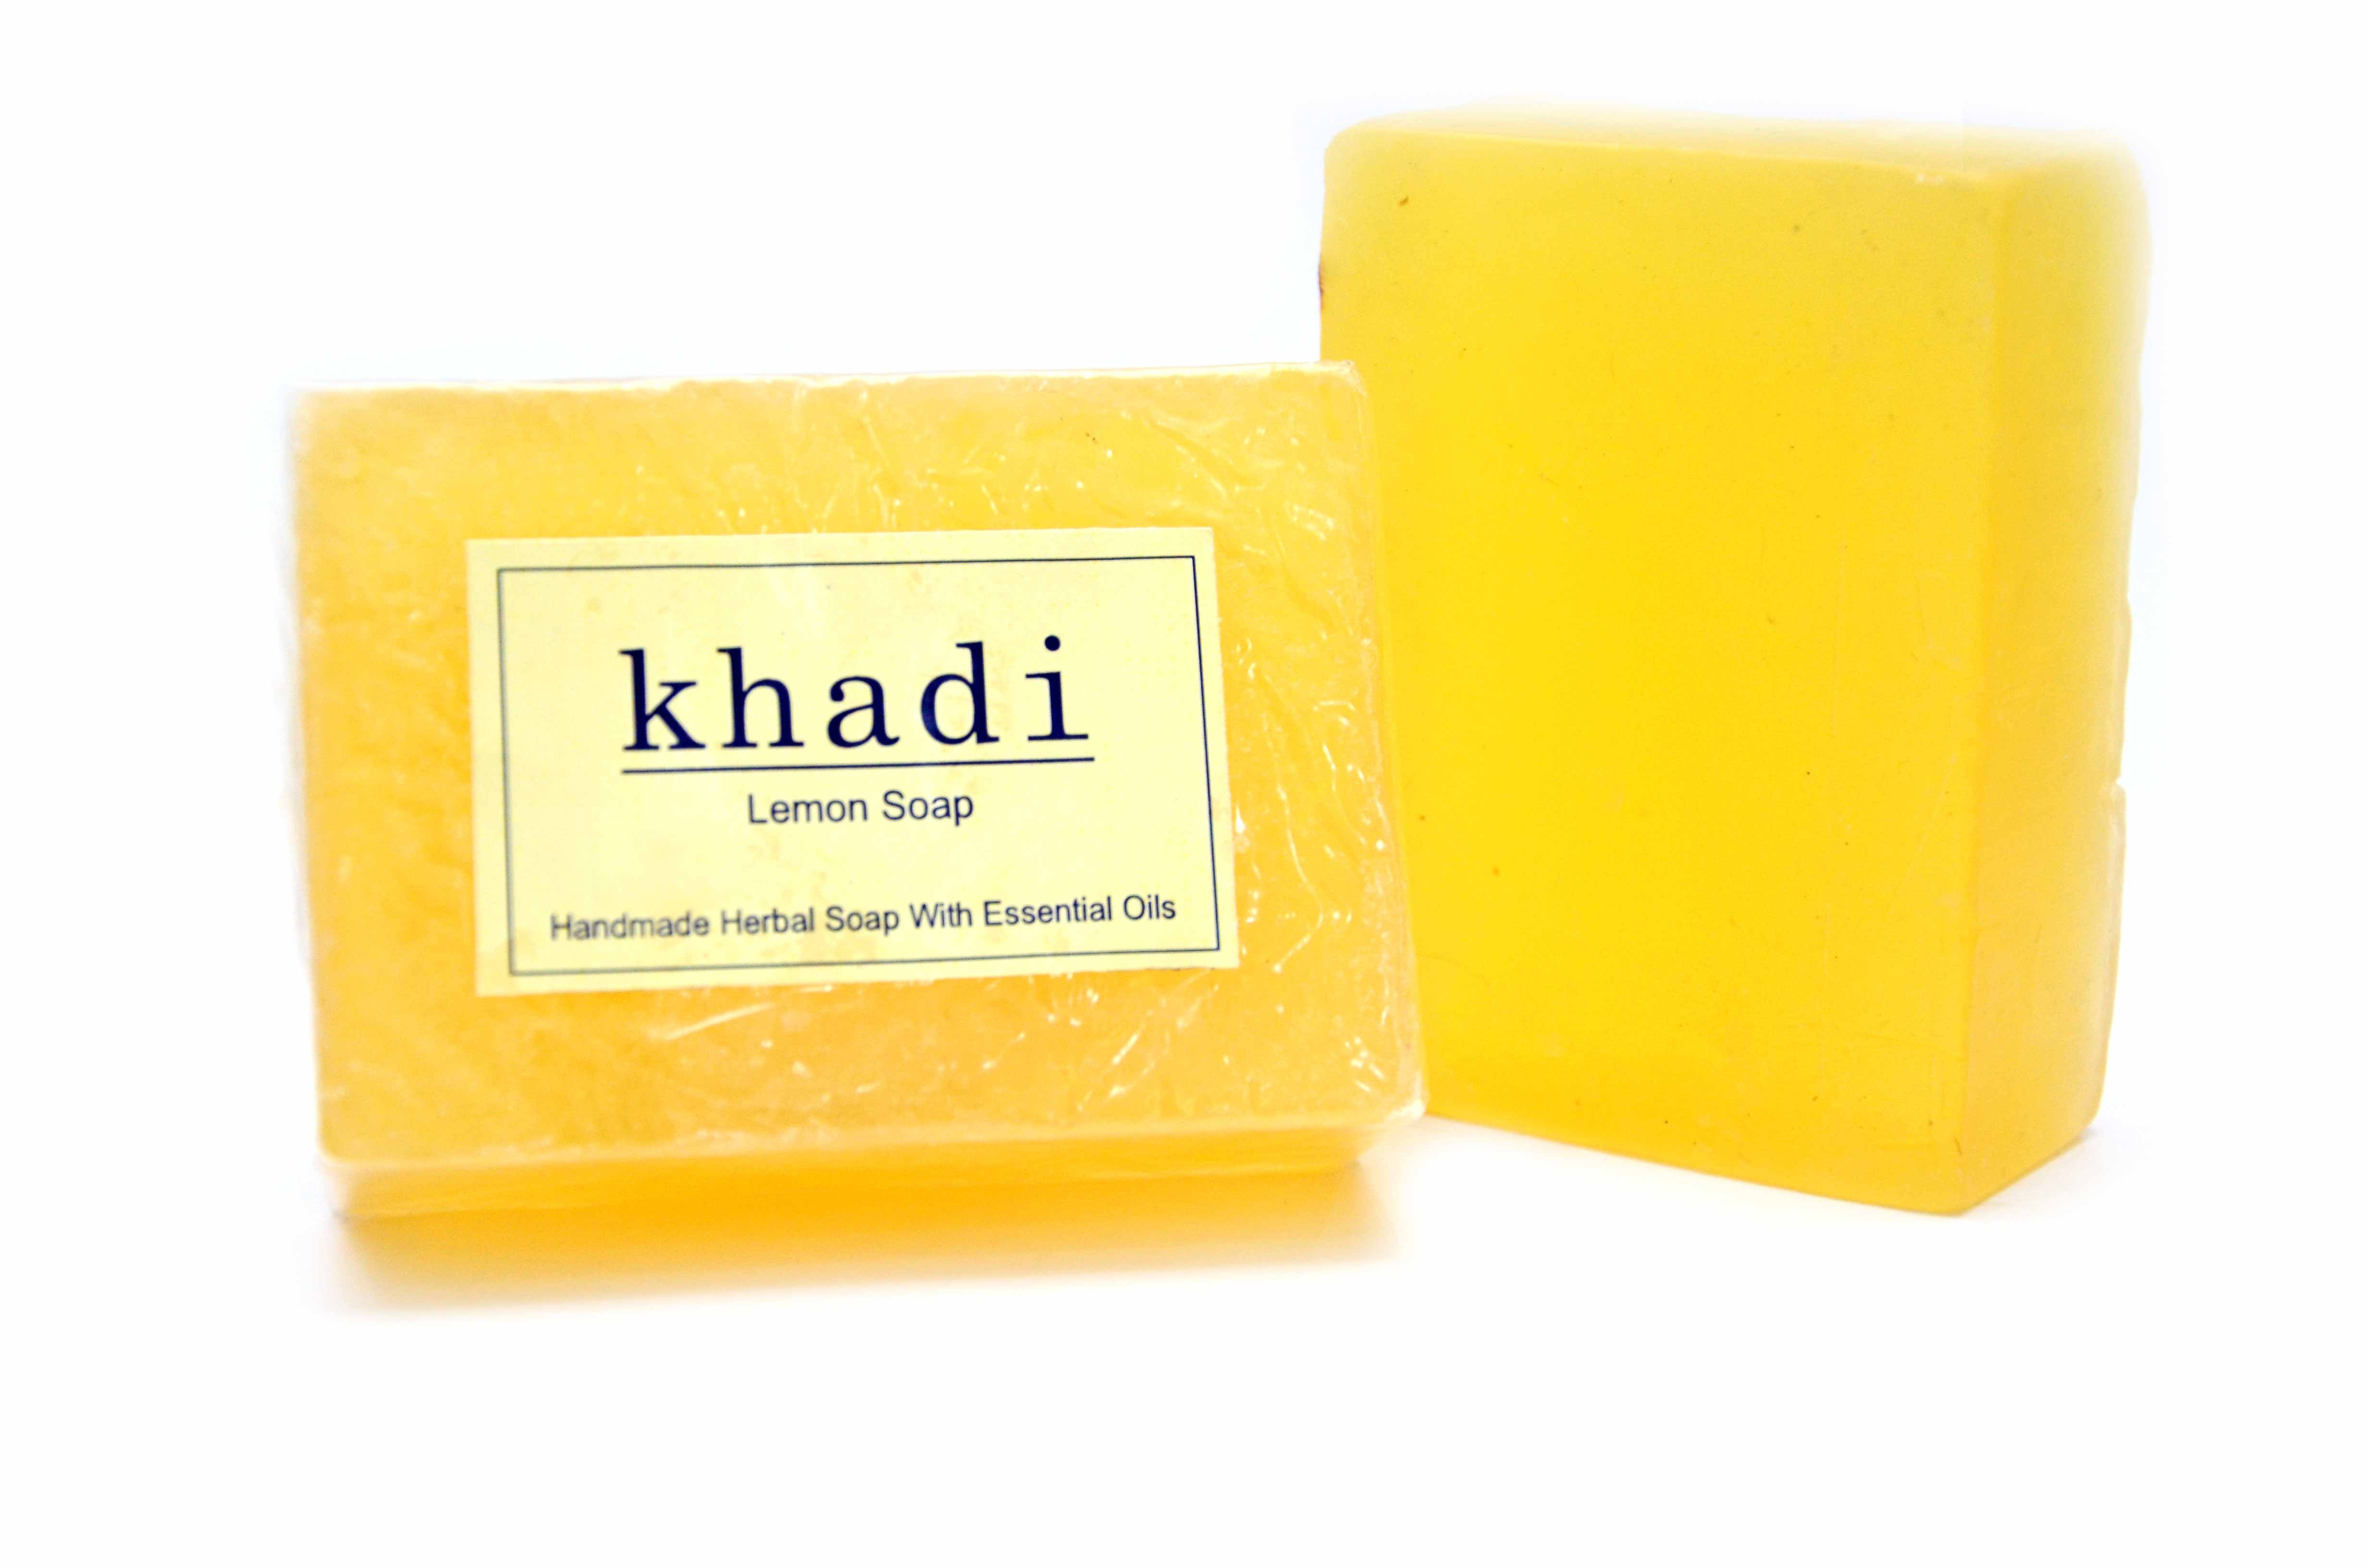 Vagad's Khadi Lemon Soap